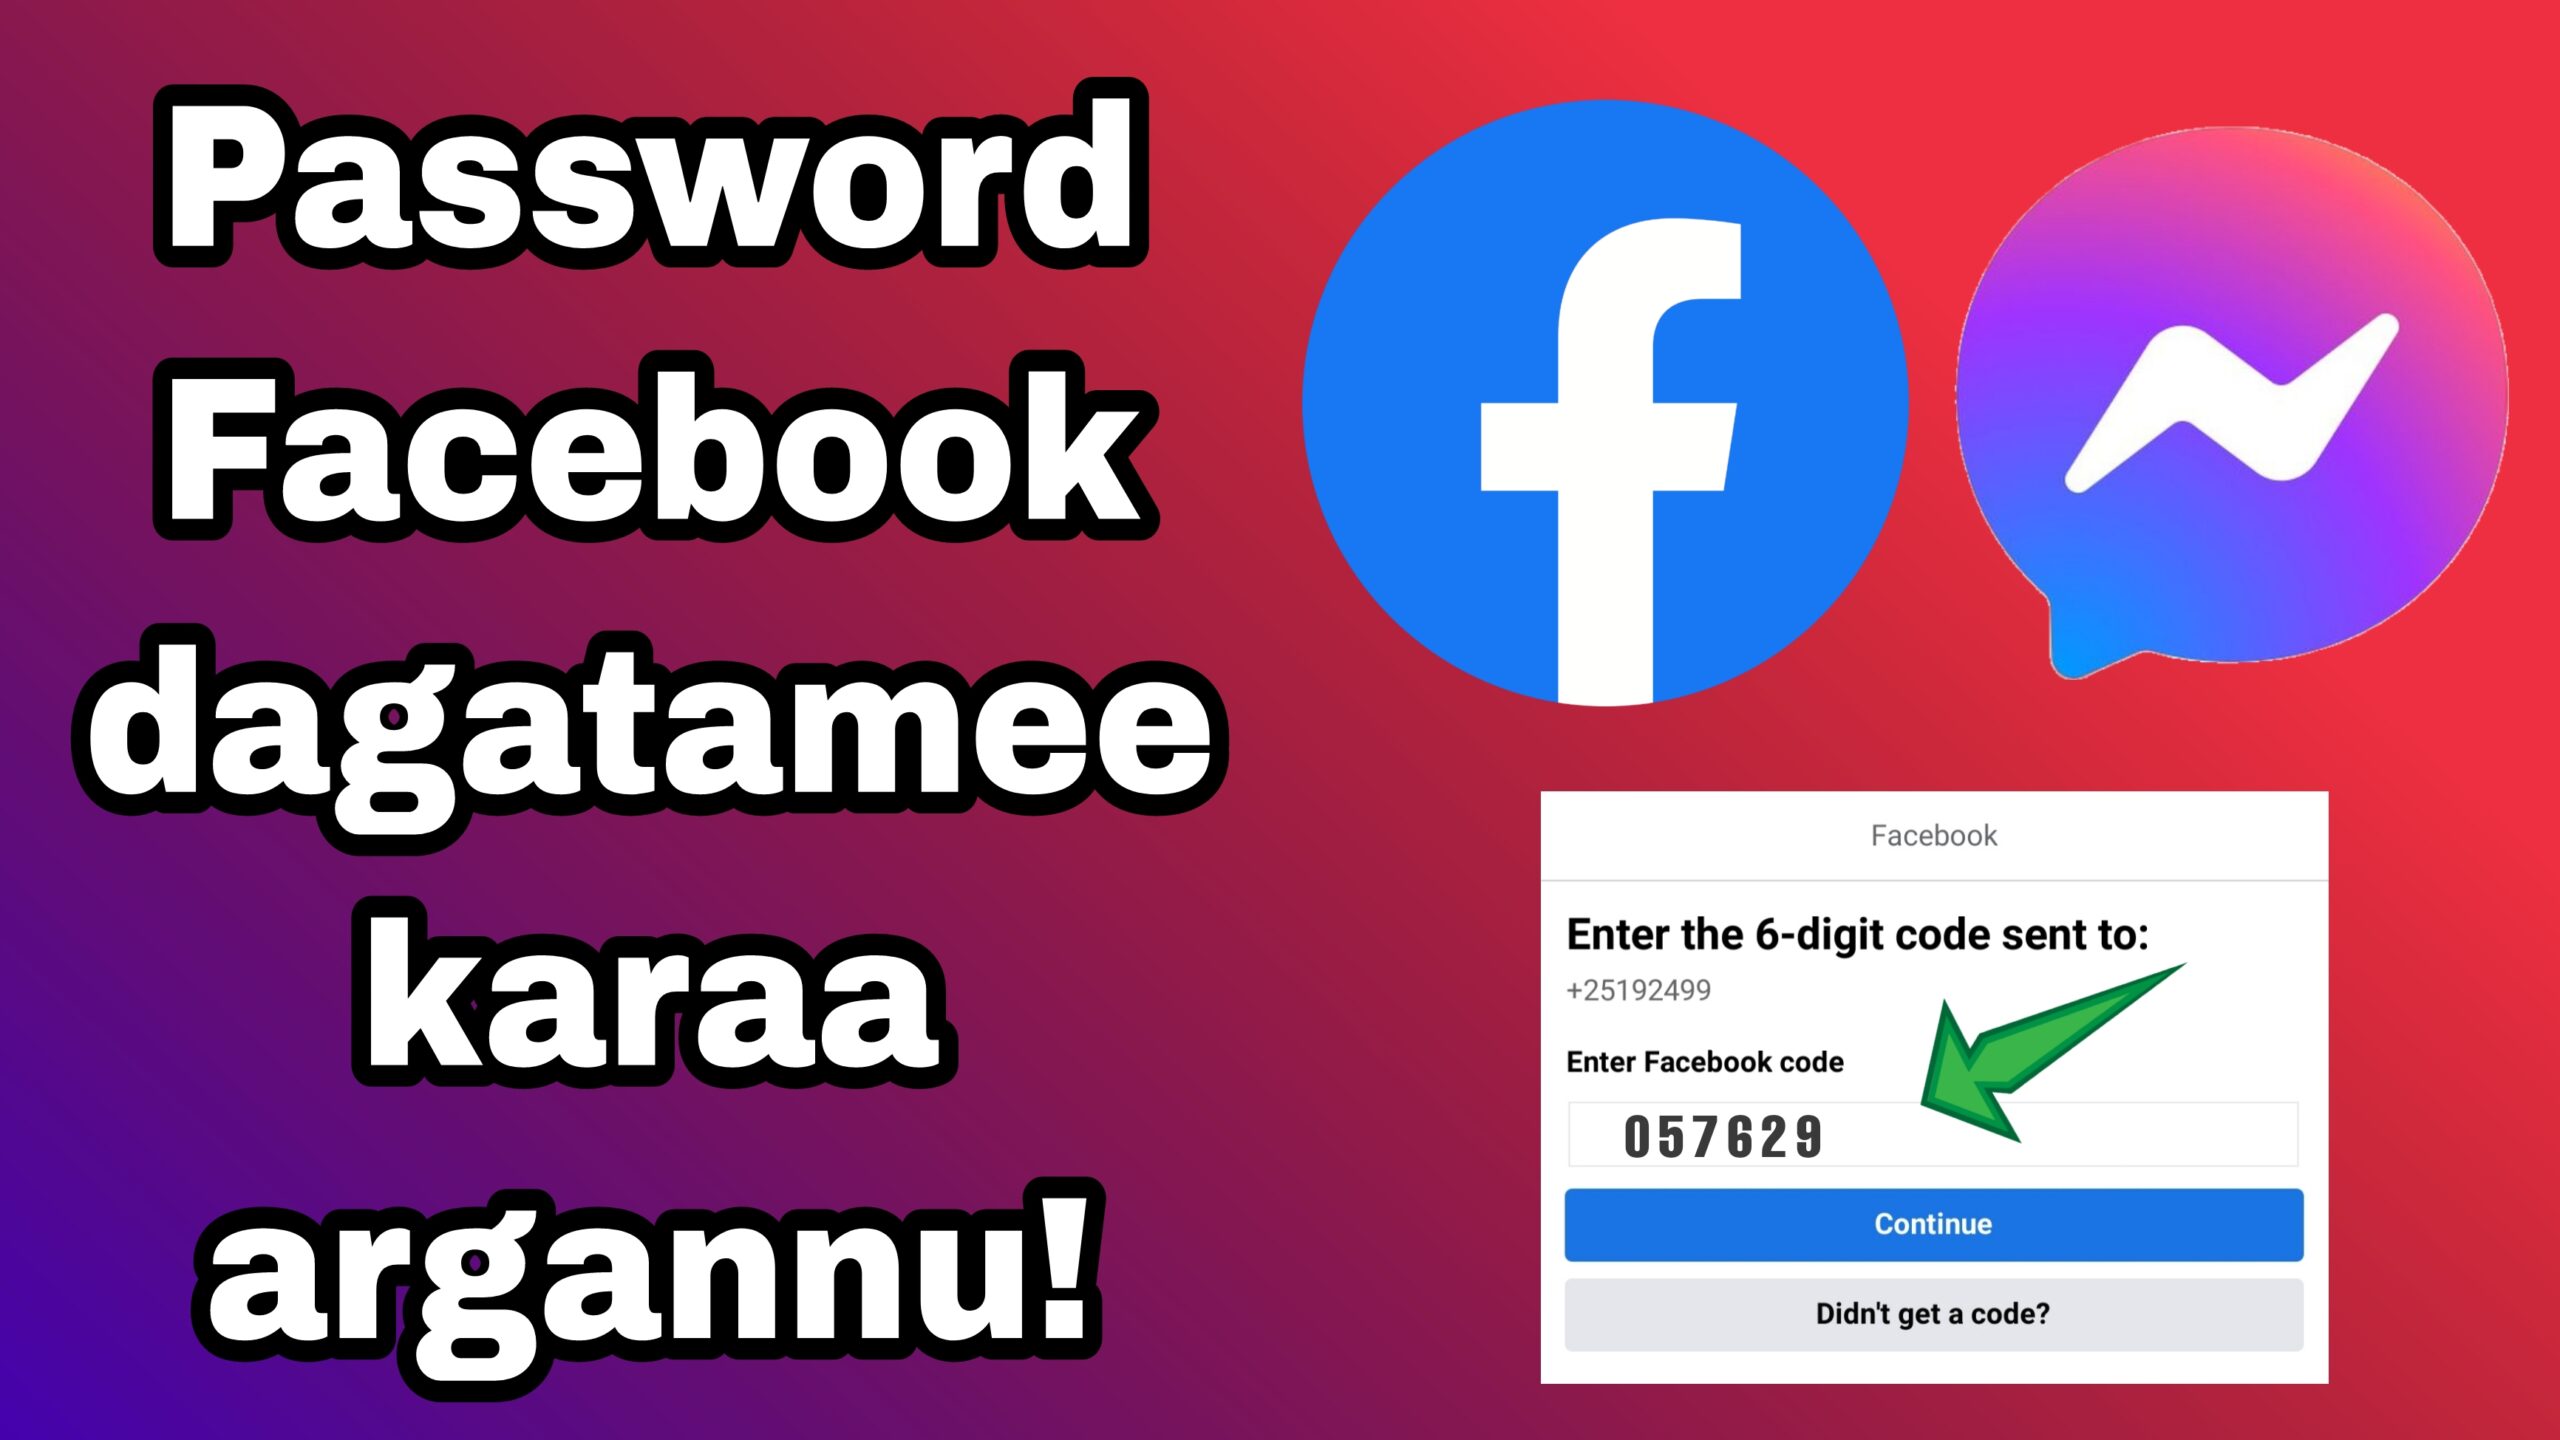 Password facebook dagatamee karaa haaressuu dandeenyu!